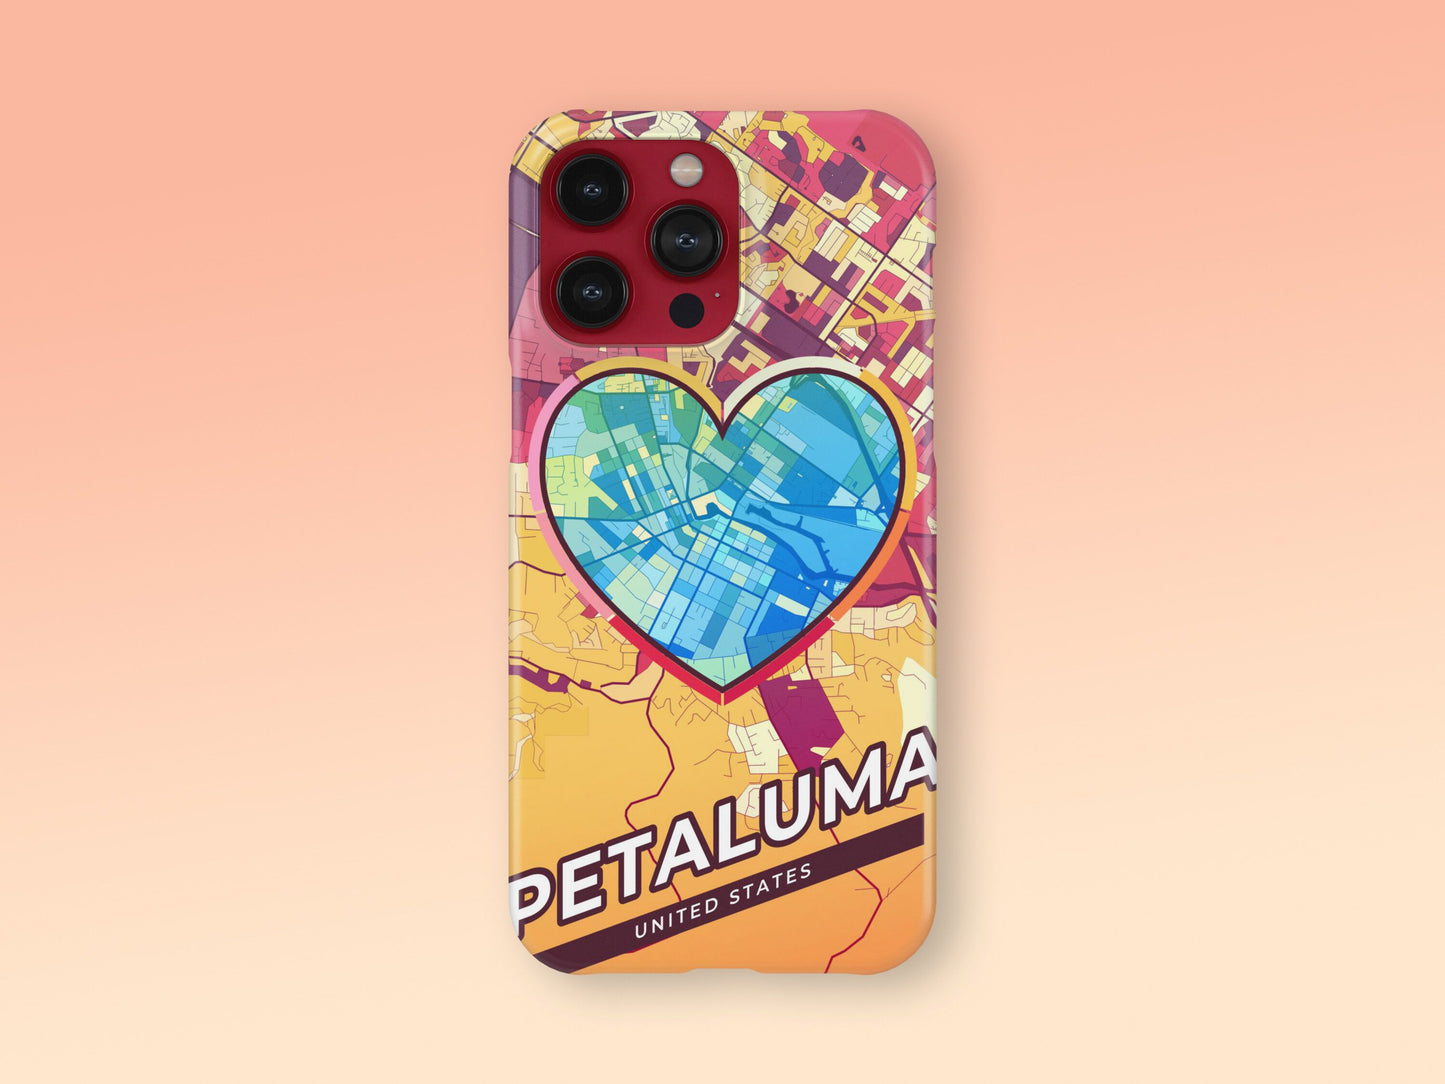 Petaluma California slim phone case with colorful icon 2